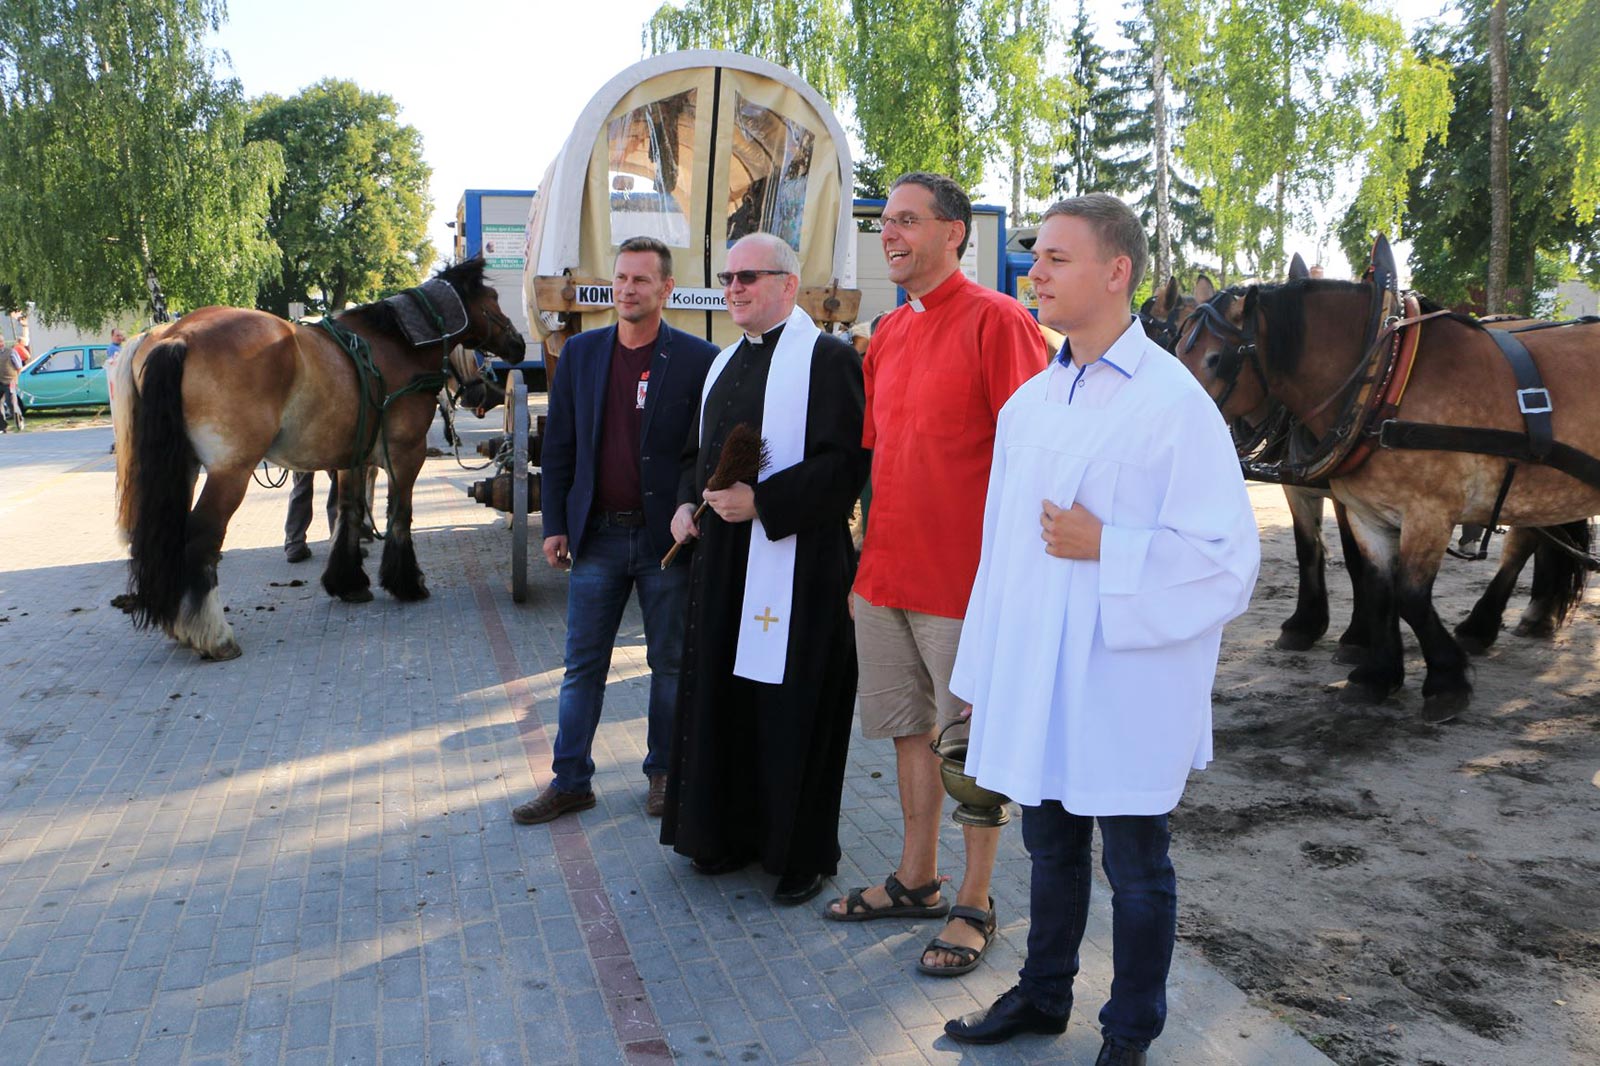 Pfarrer Kautz mit Priester und Pferden - Titanen on tour 2018